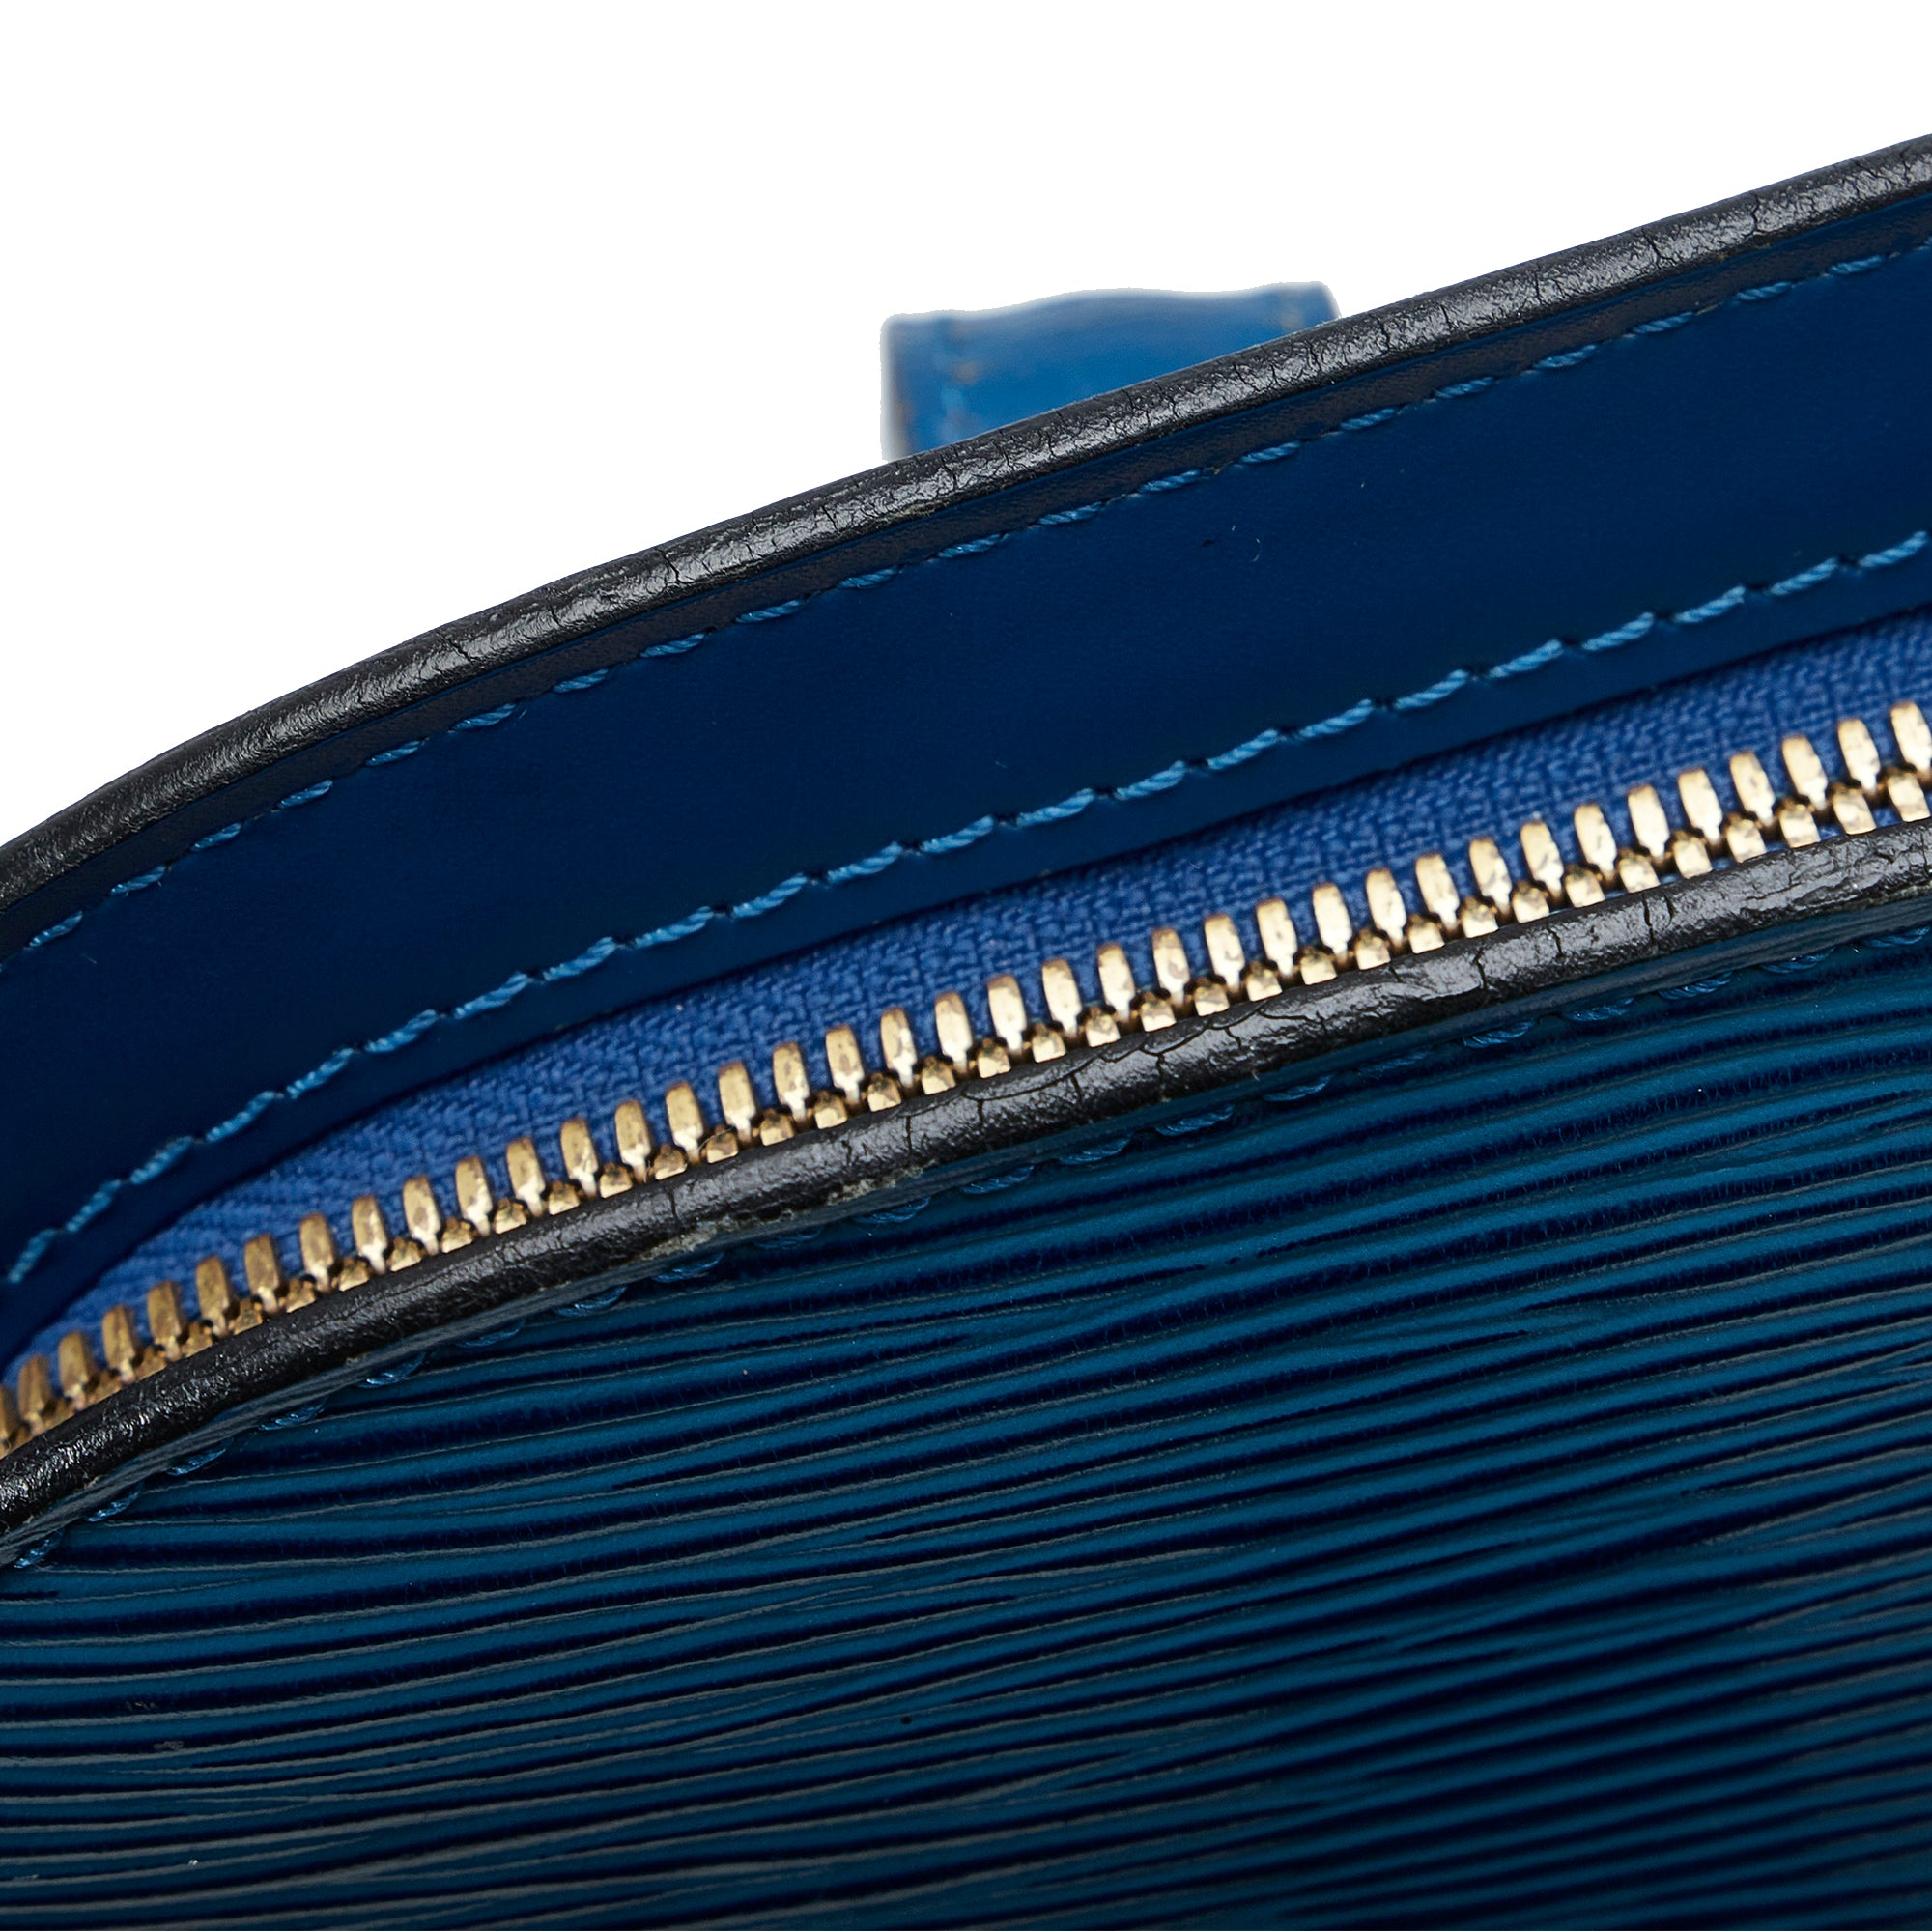 Louis Vuitton Blue Epi Leather Lussac Tote Set Auction